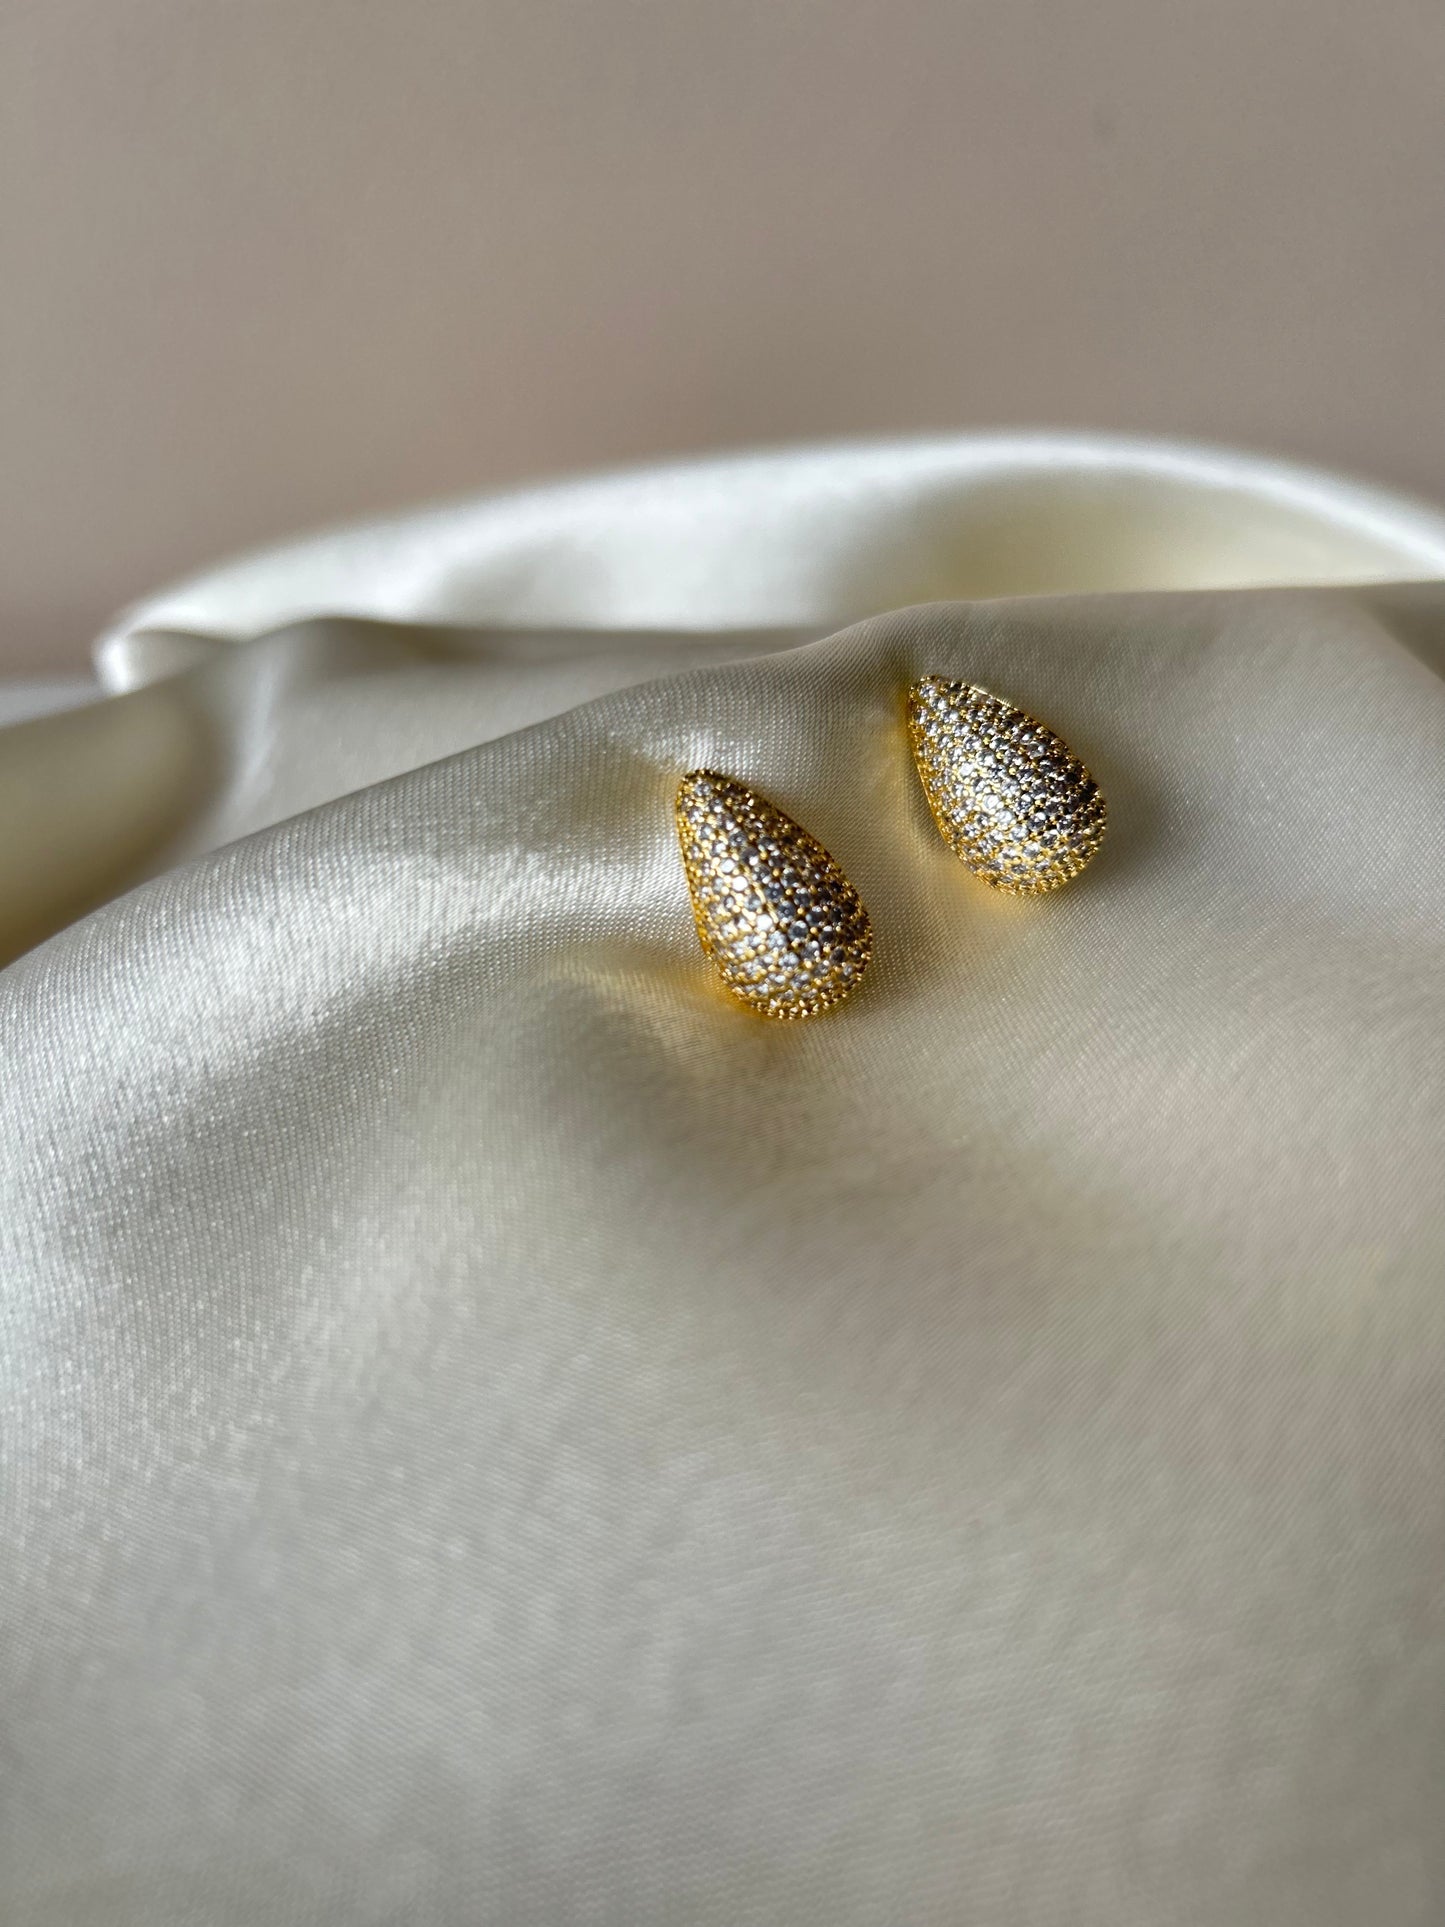 Teardrop Crystal Earrings Gold